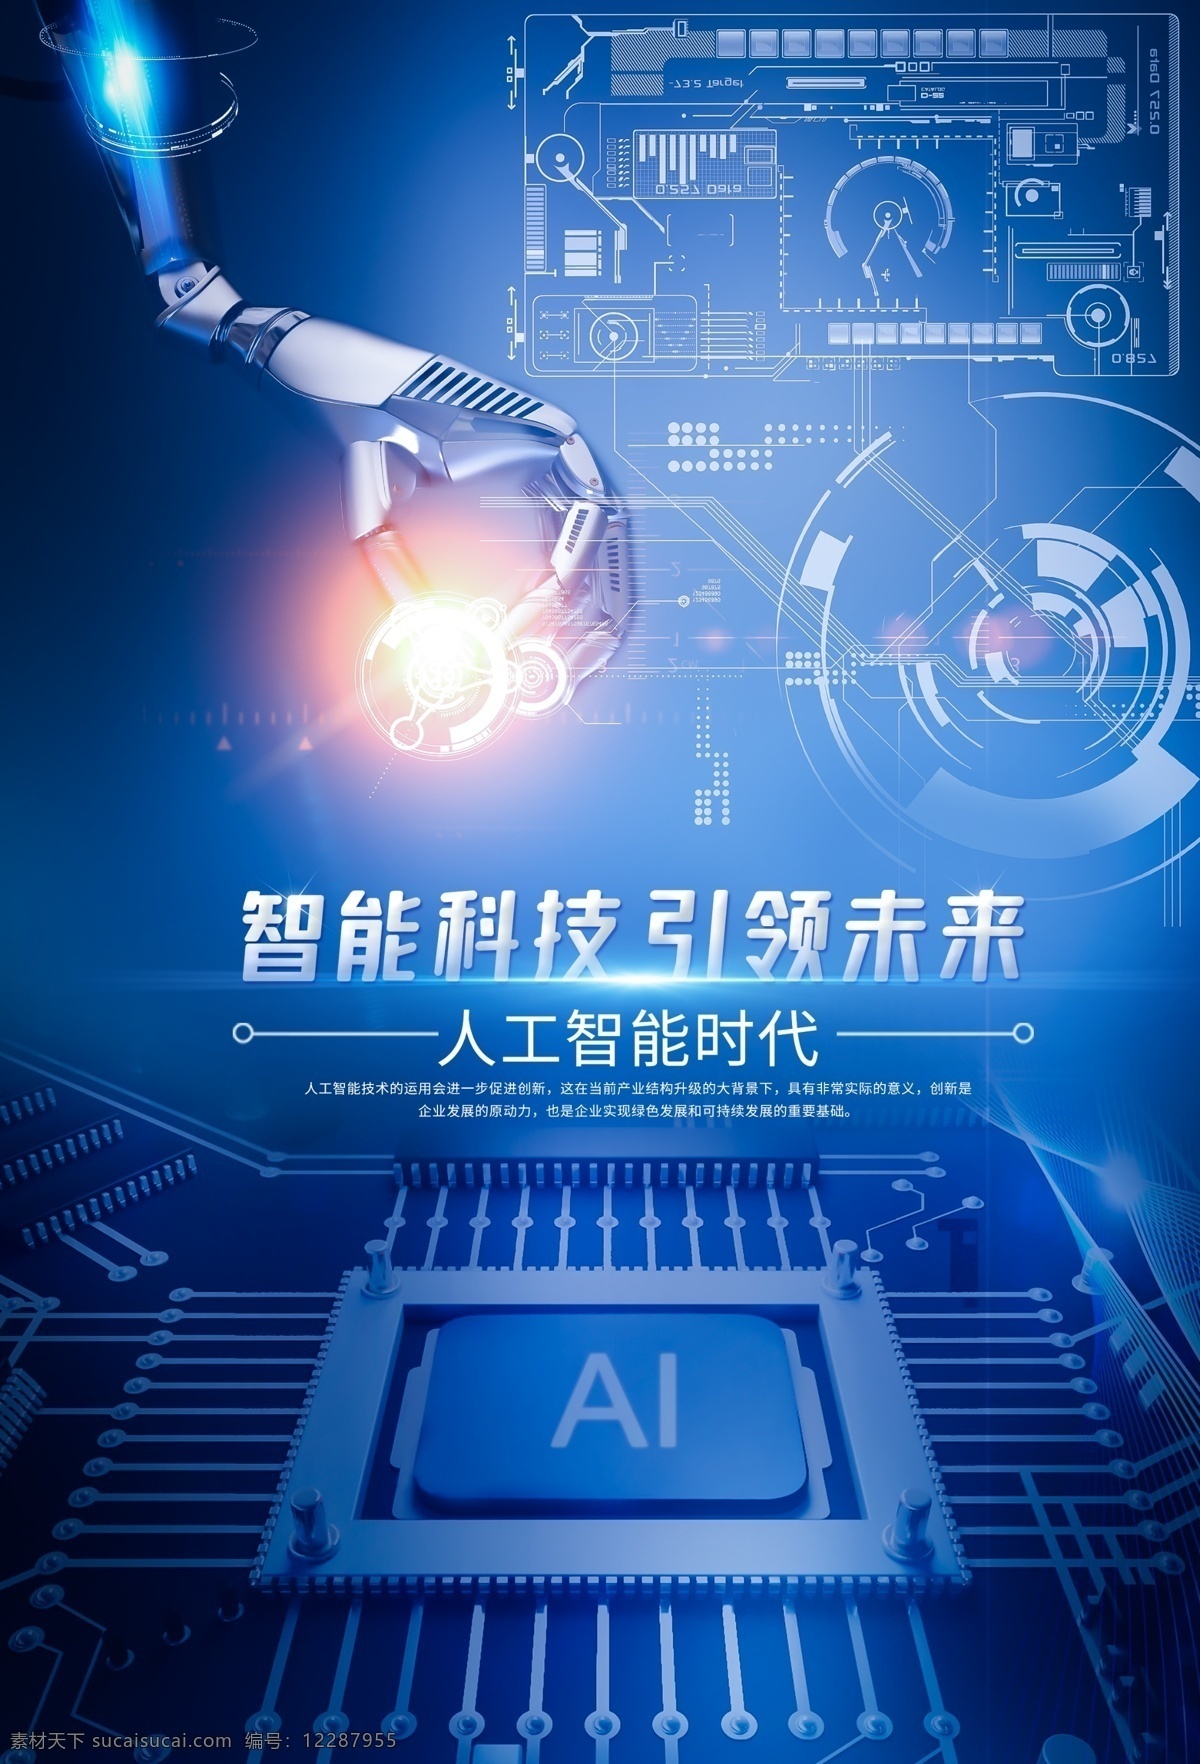 蓝色科技海报 蓝色 大气 智能 云科技 科技 技术 机器人 机械 炫酷 高科技 科技时代